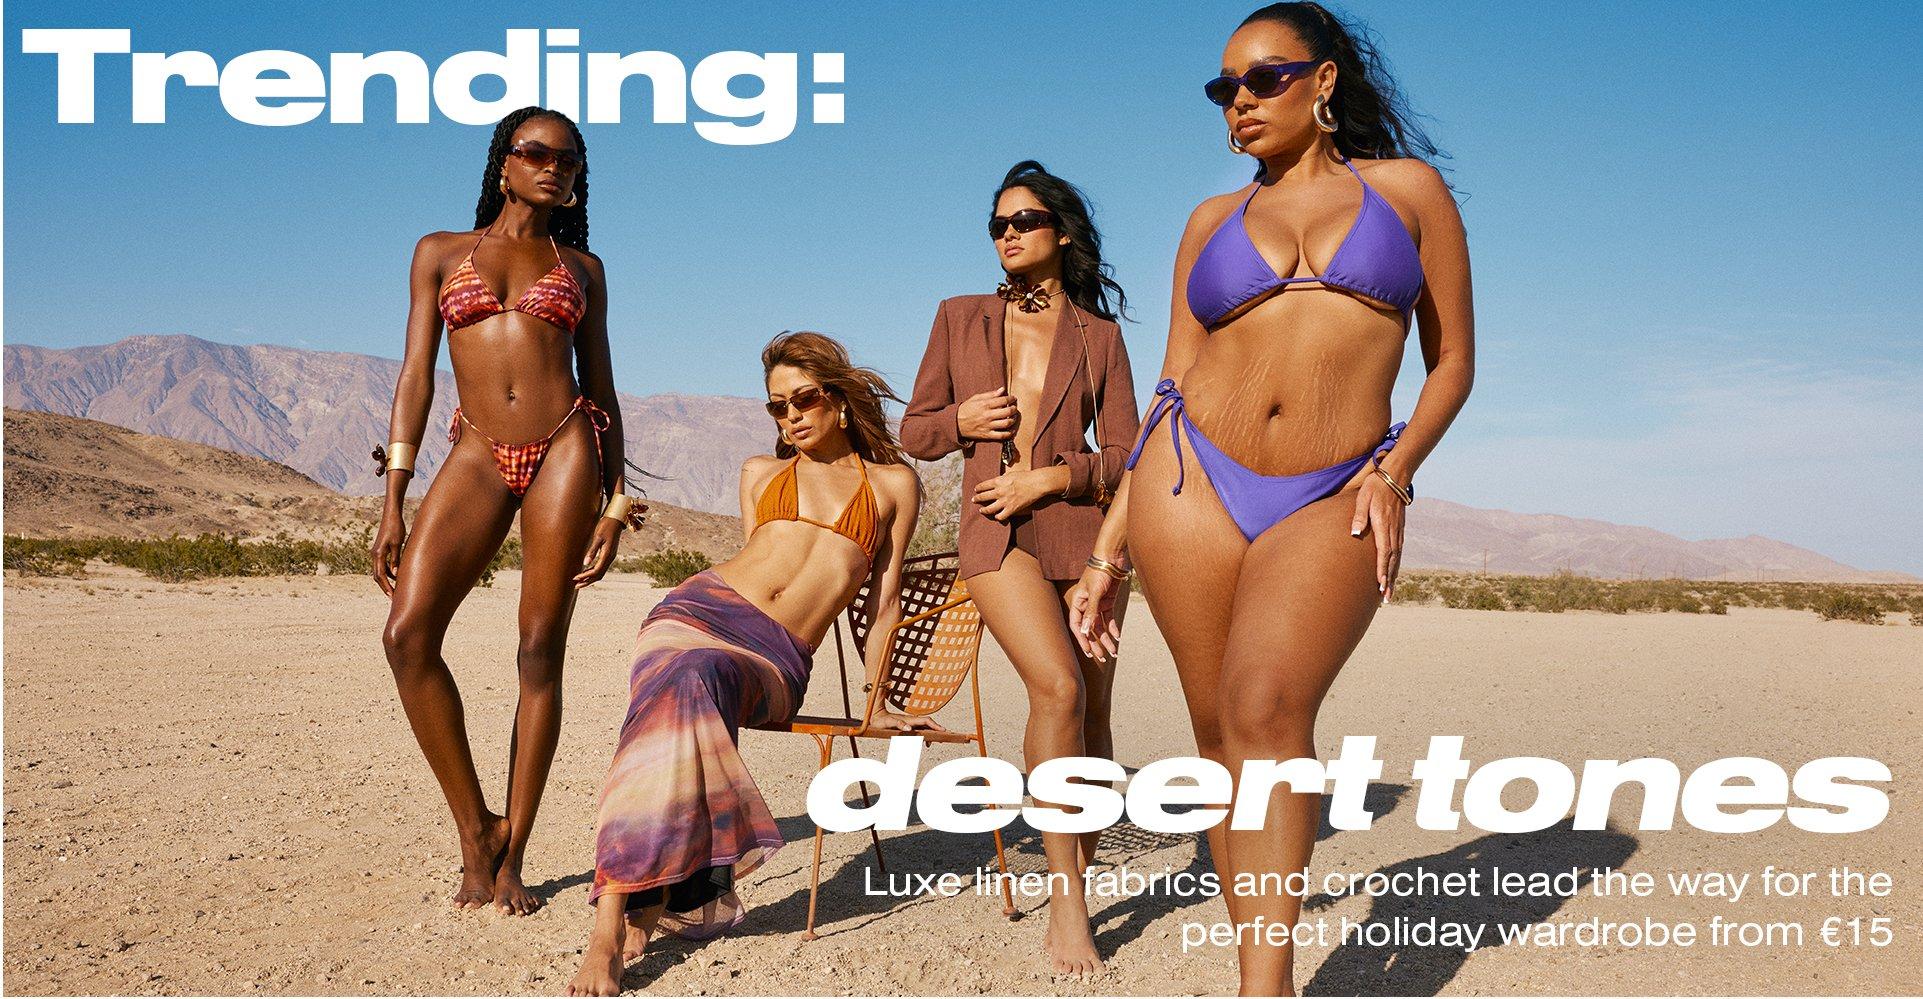 trending: desert tones